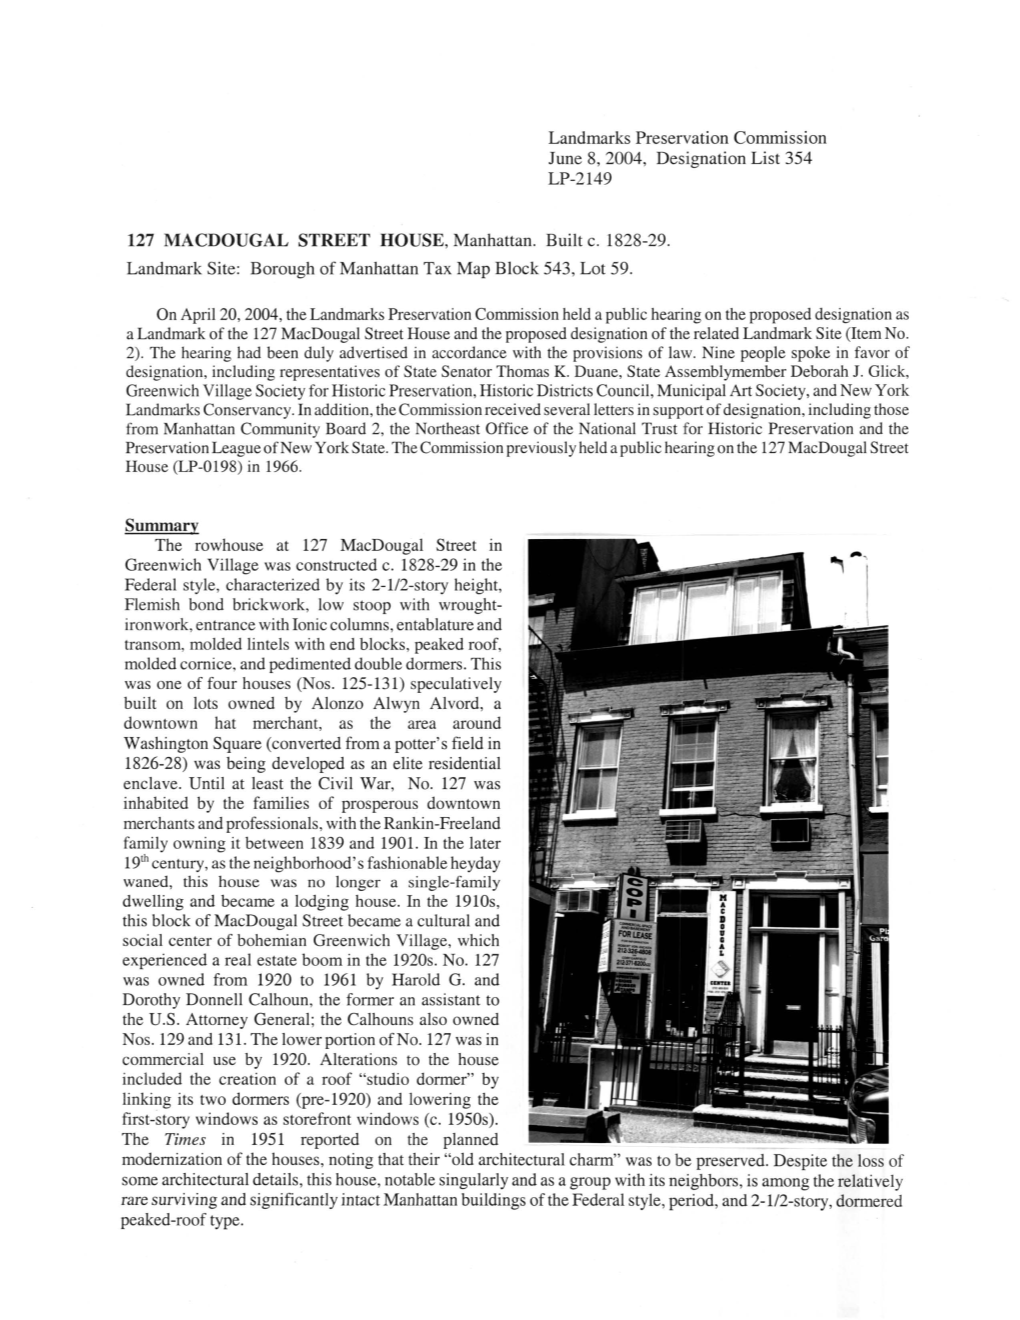 127 MACDOUGAL STREET HOUSE, Manhattan